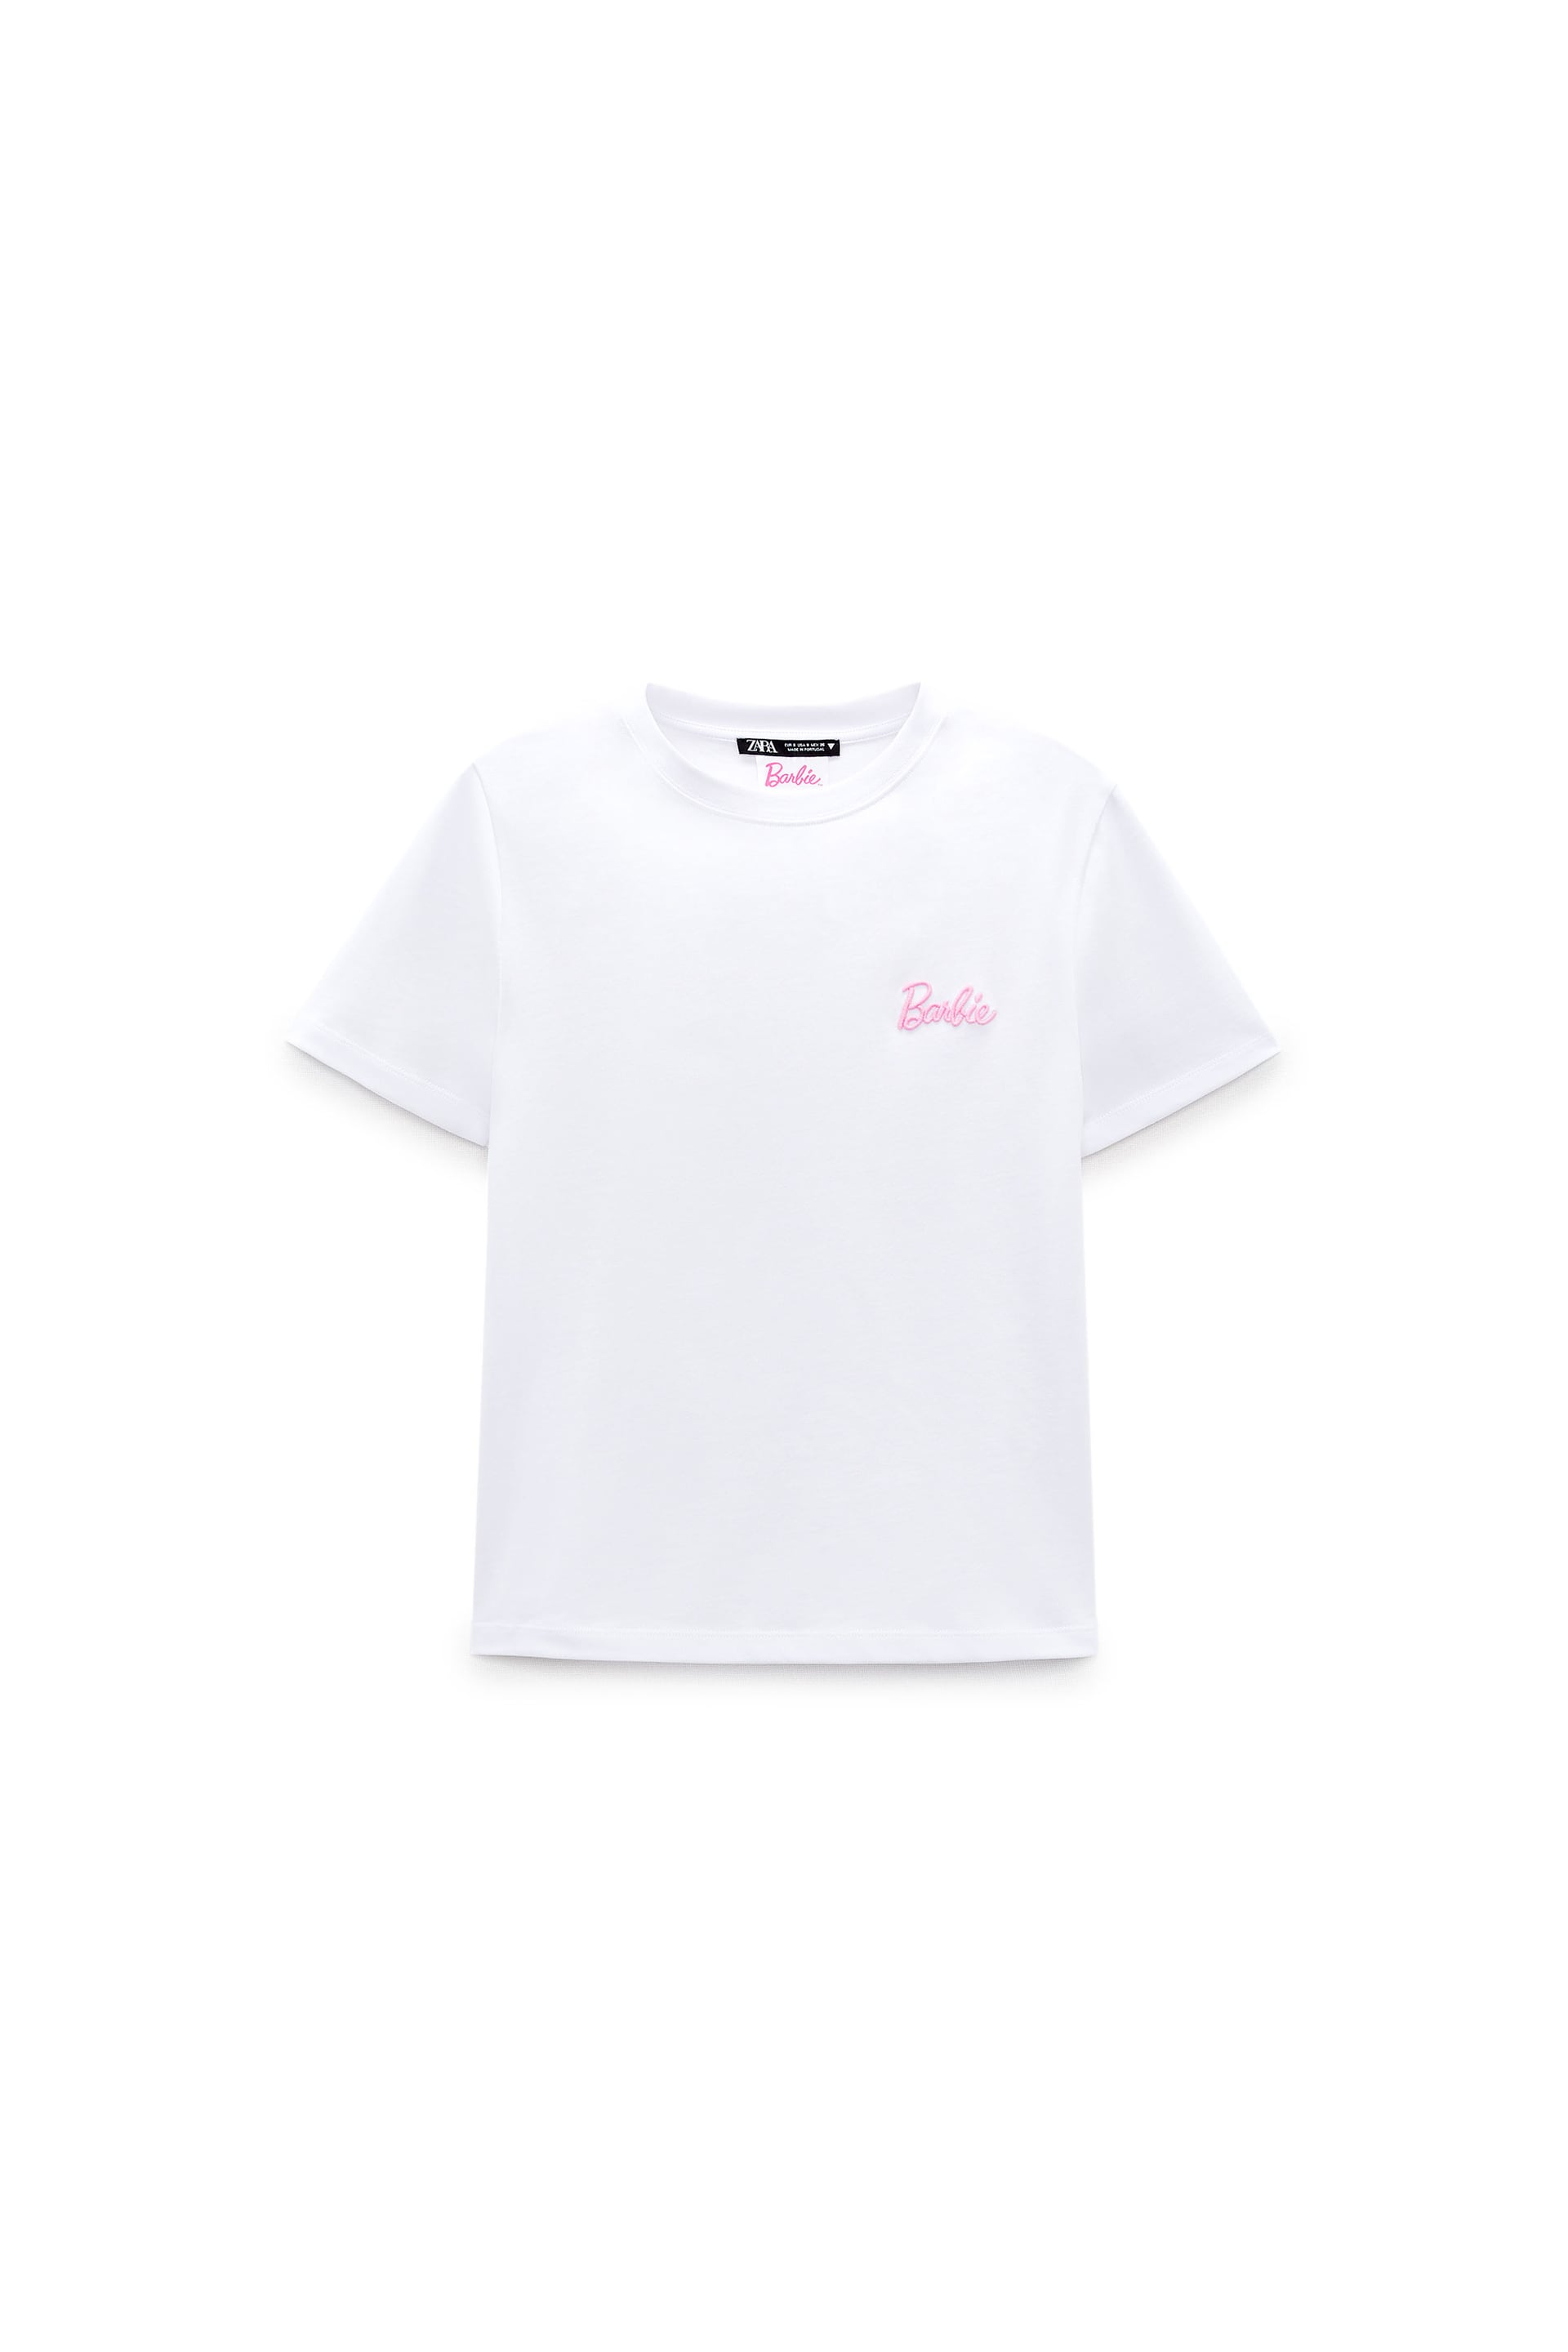 BARBIE™ MATTELTシャツ ホワイト ZARA Japan 日本